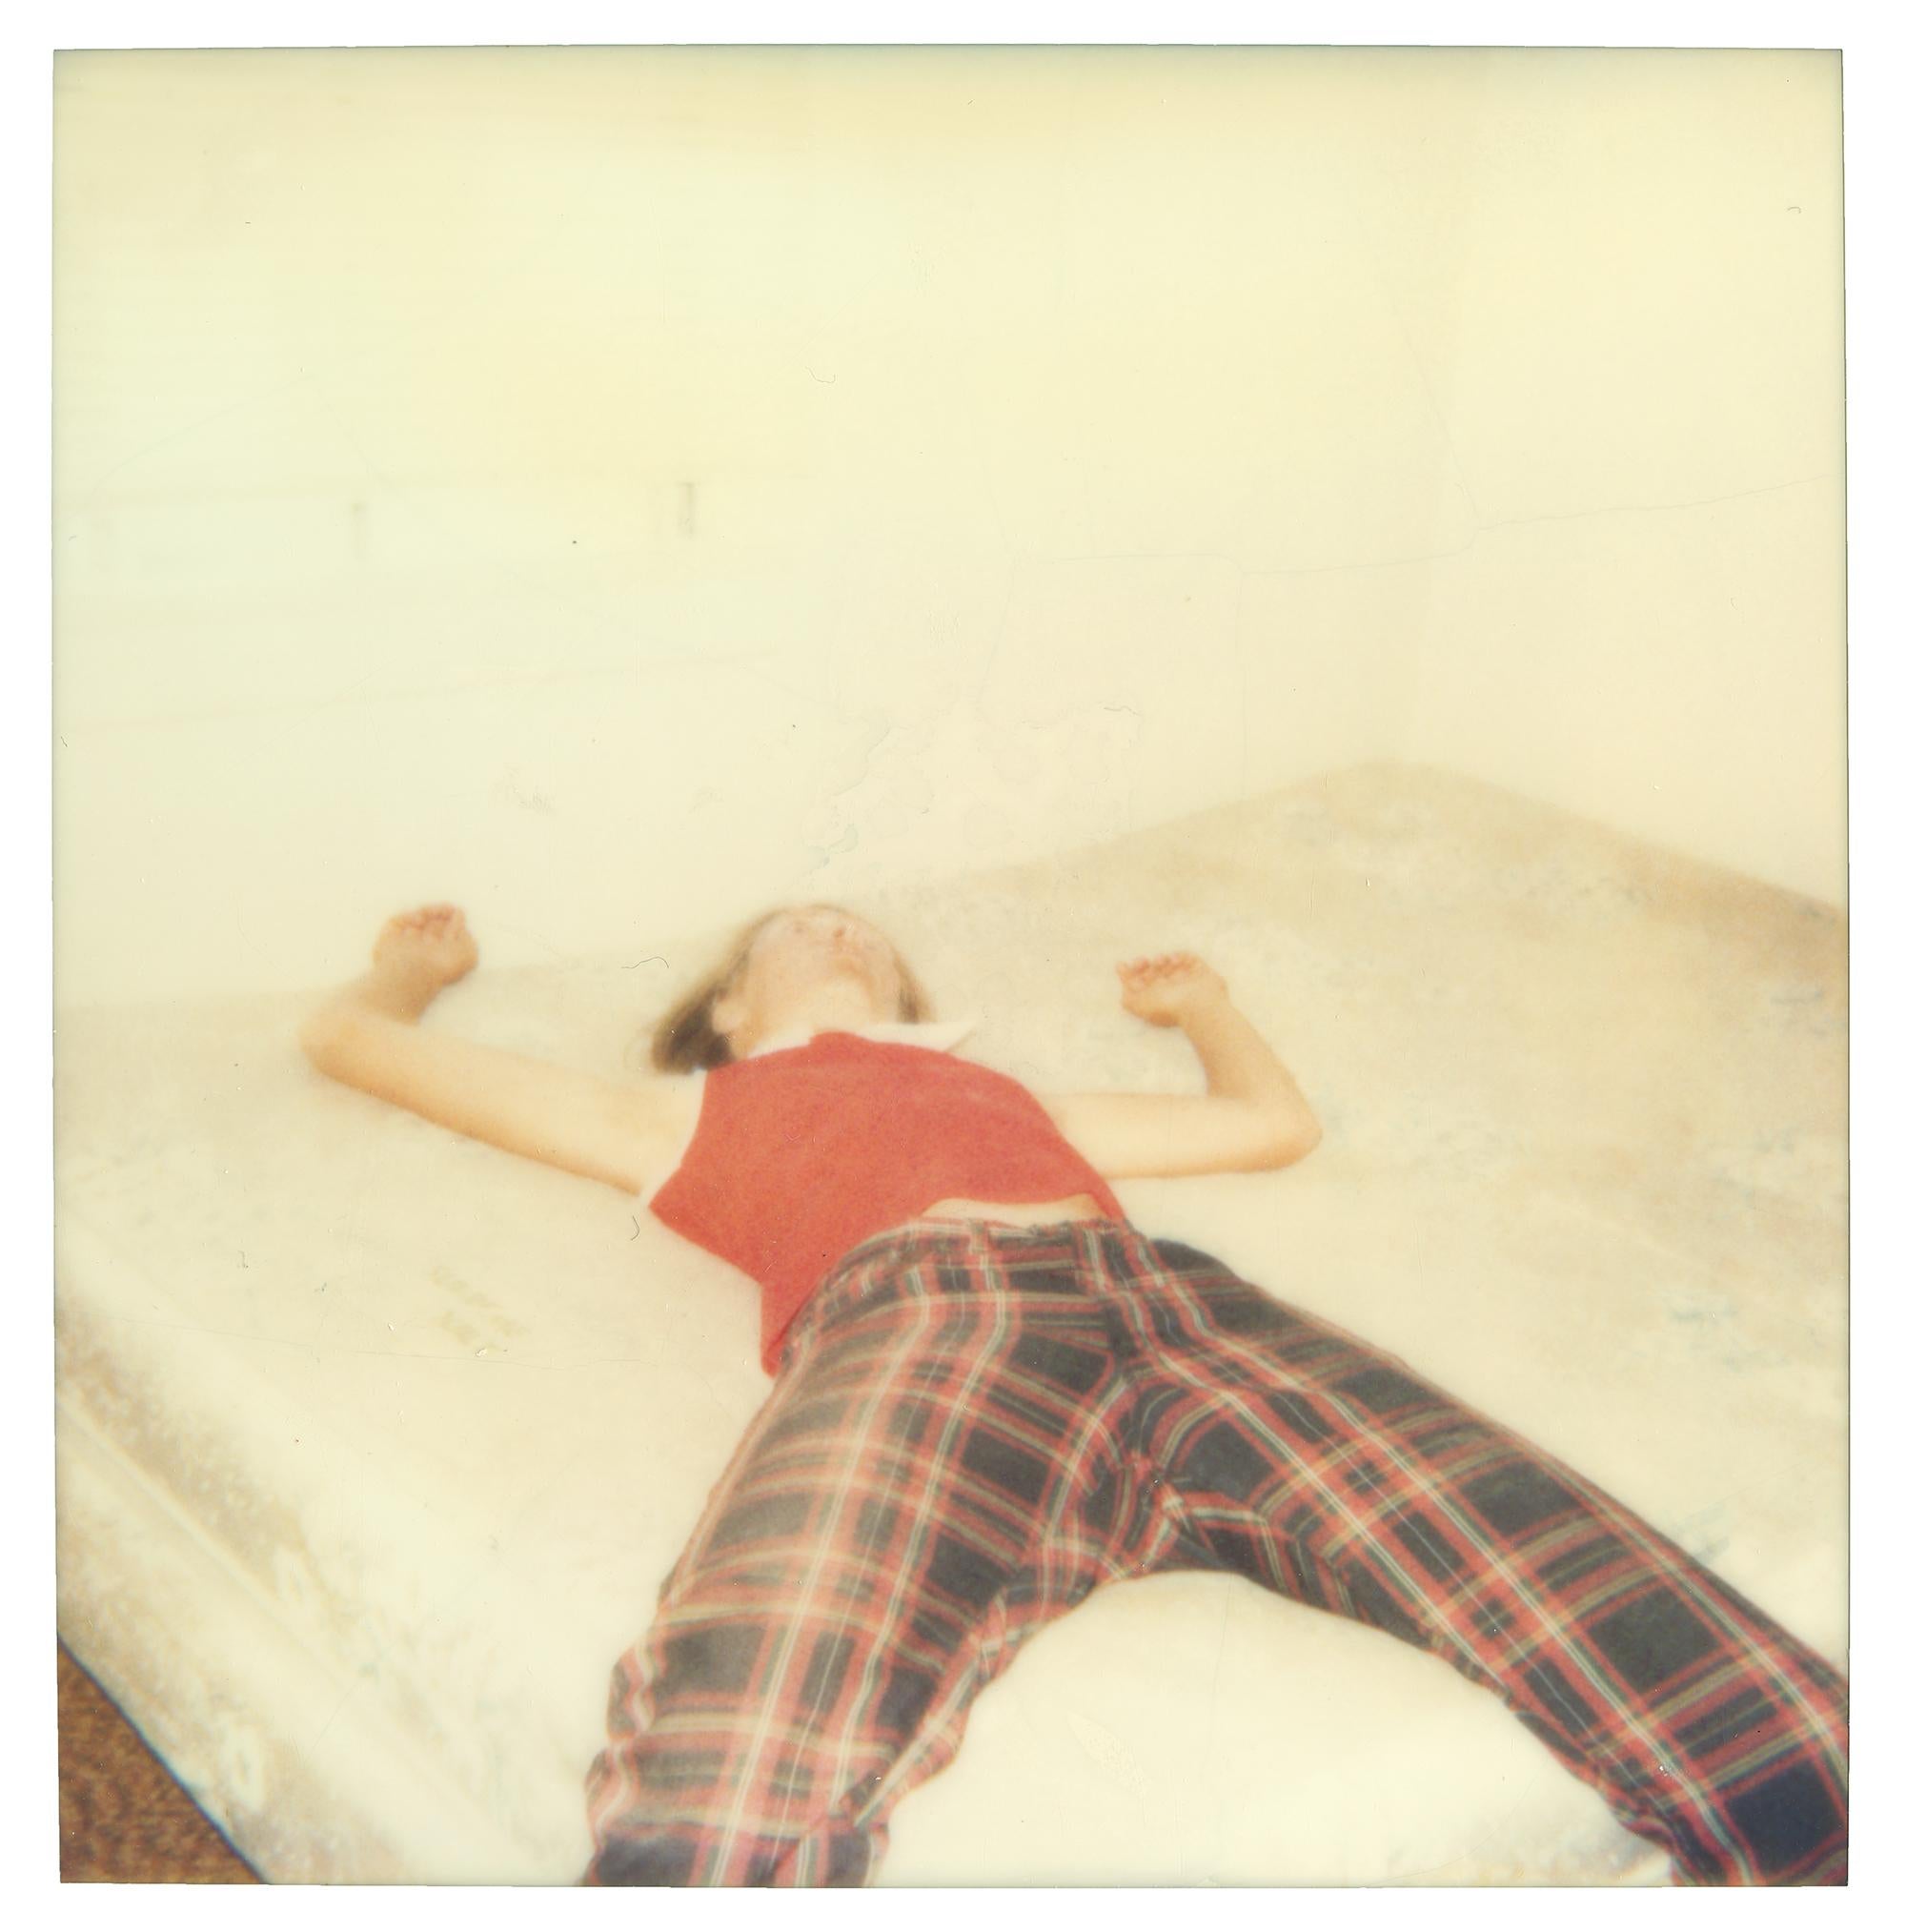 Stefanie Schneider Portrait Photograph - Stefanie on bed looking quite dead (29 Palms, CA) - Analog, Polaroid, mounted